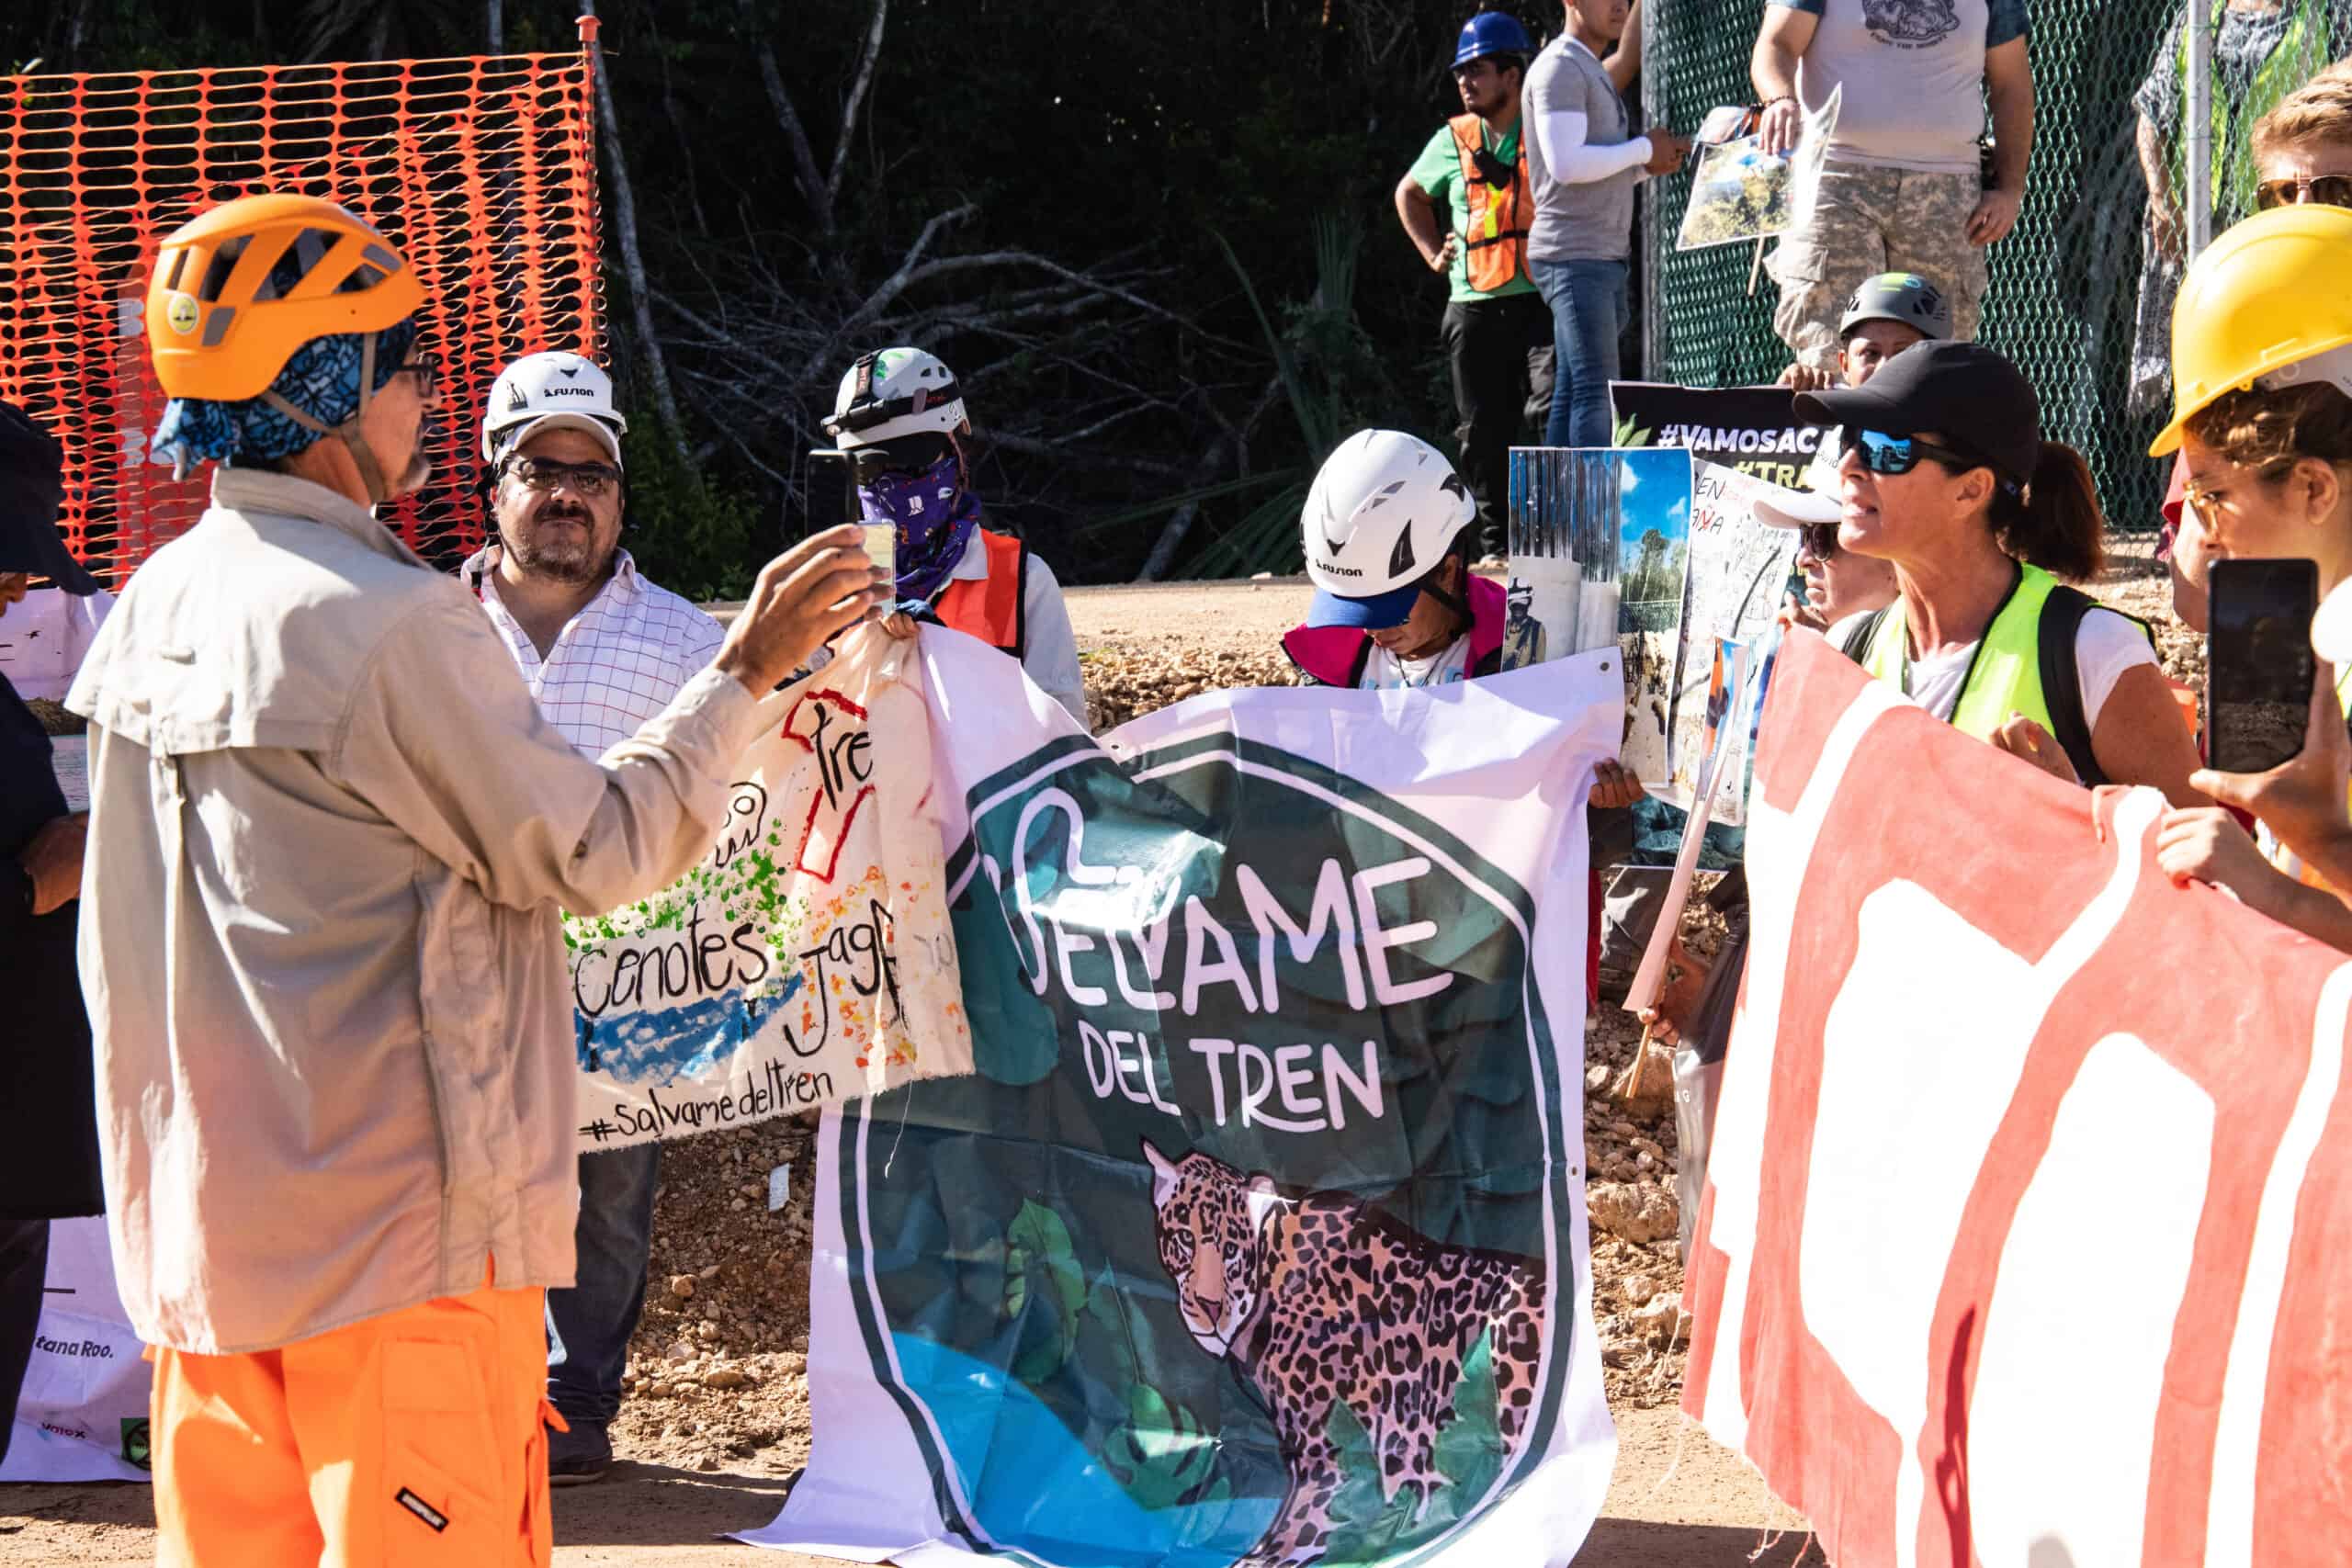 Fotografía de un grupo de personas protestando, se ven varias mantas, una de ellas de Selvame del Tren.